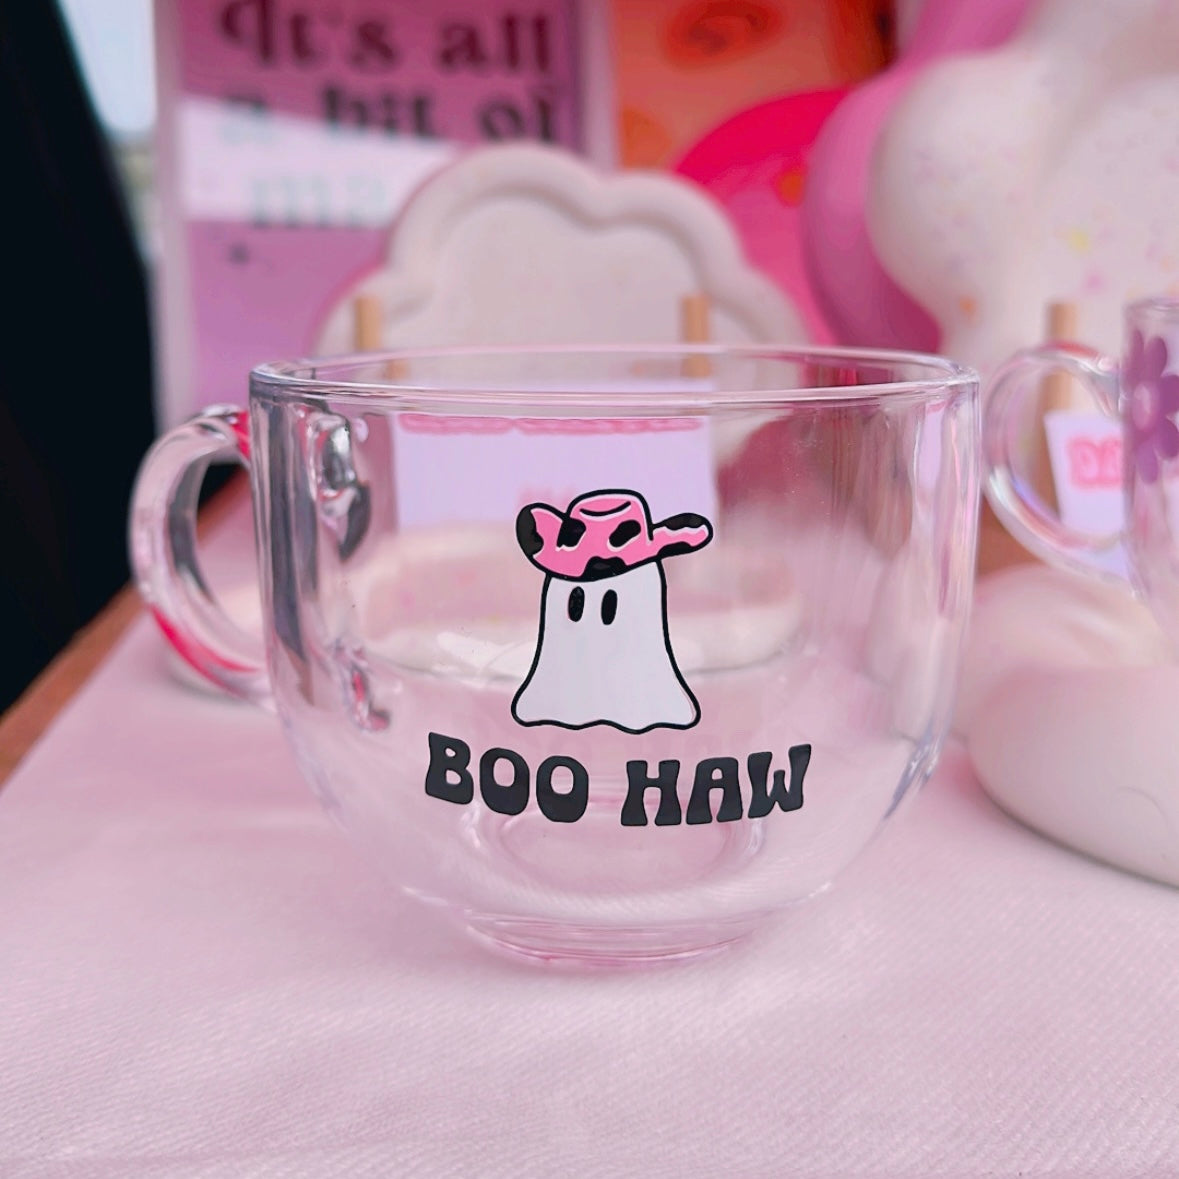 Boohaw Cowgal Mug